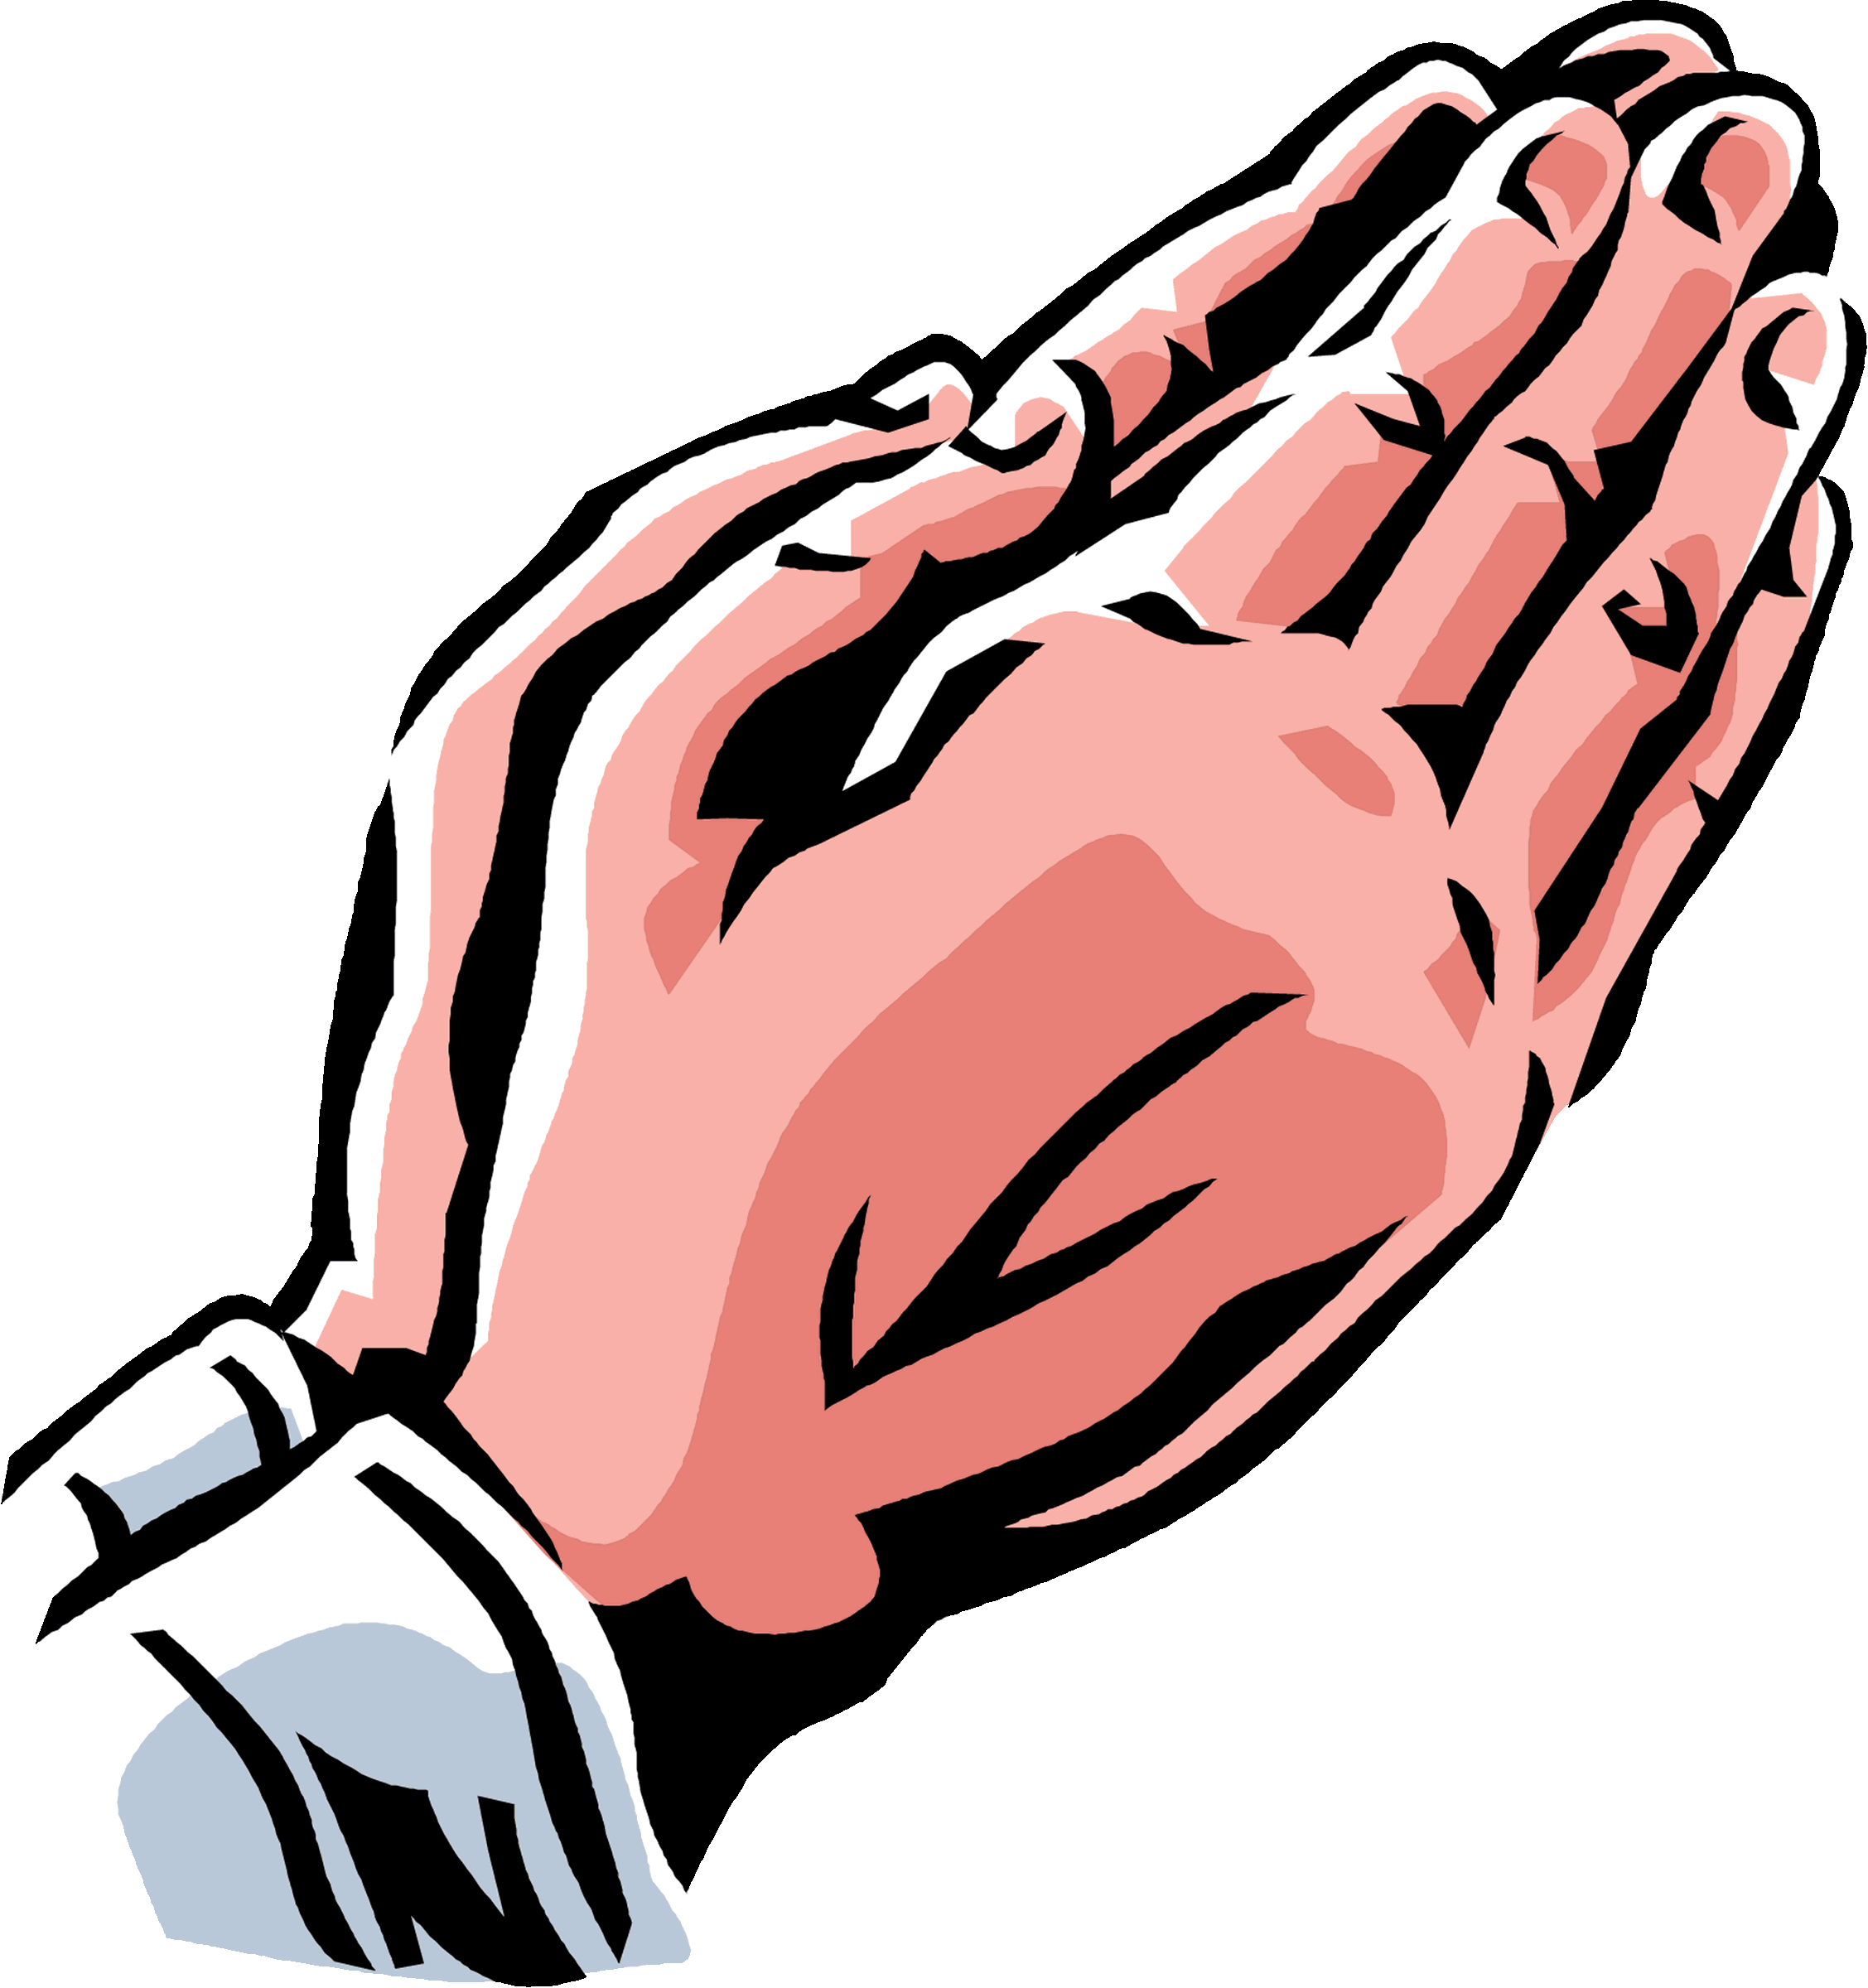 Best Praying Hands Clipart